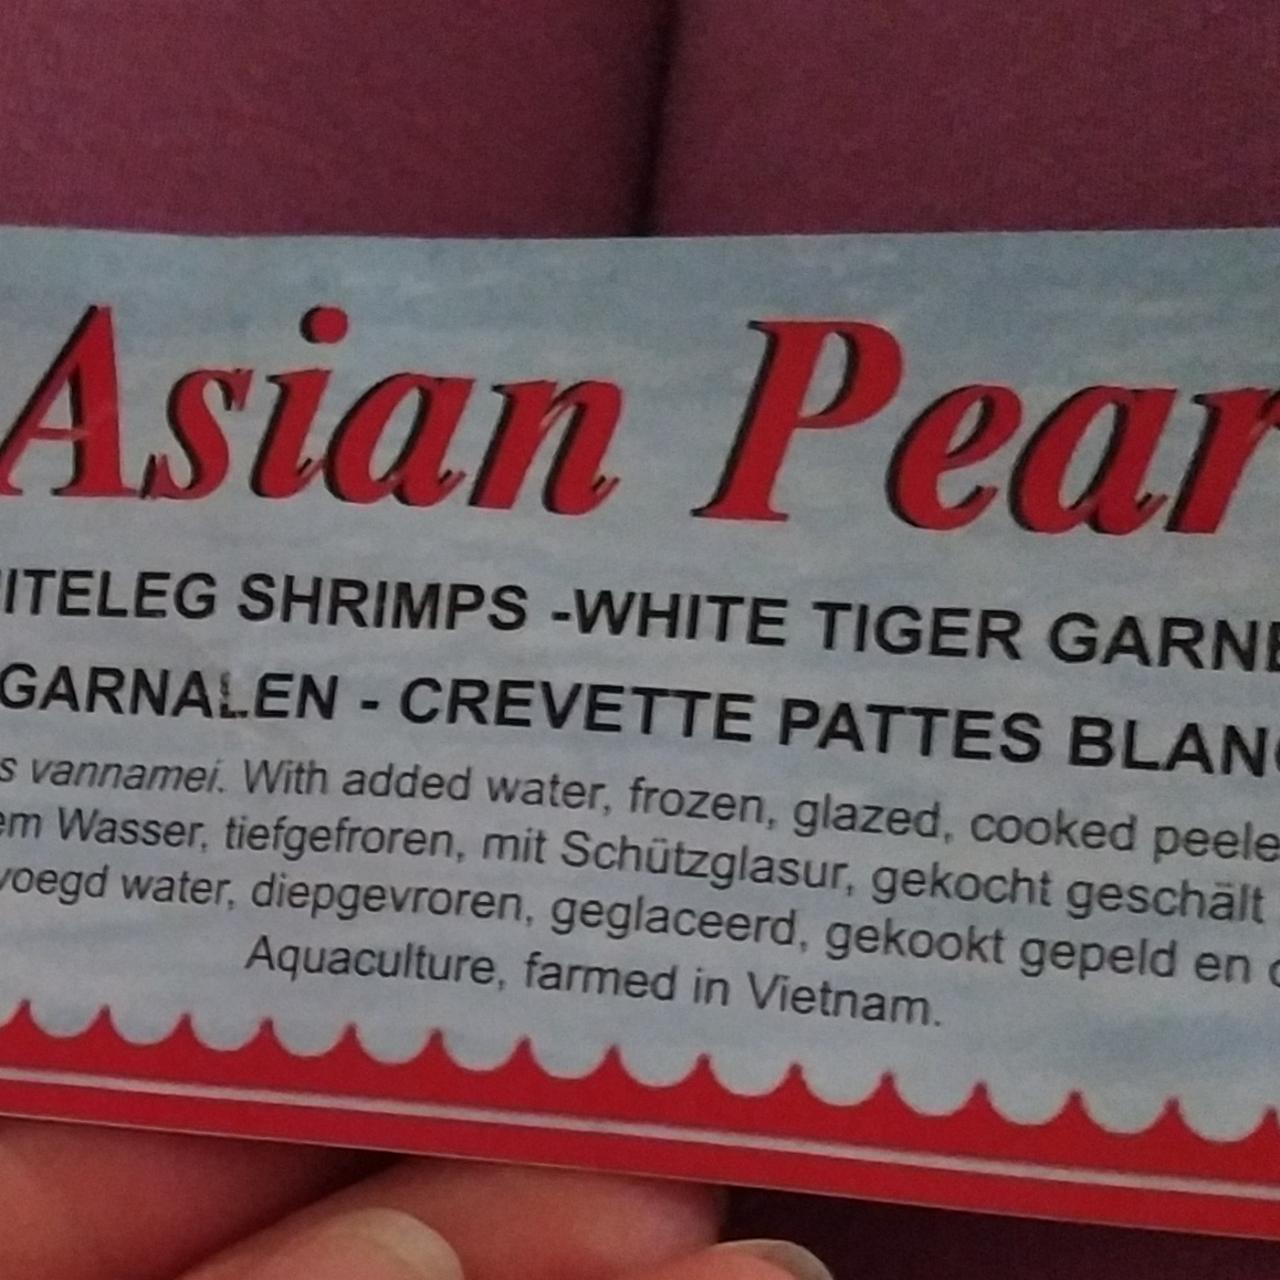 Fotografie - Whiteleg shrimps Asian Pearl